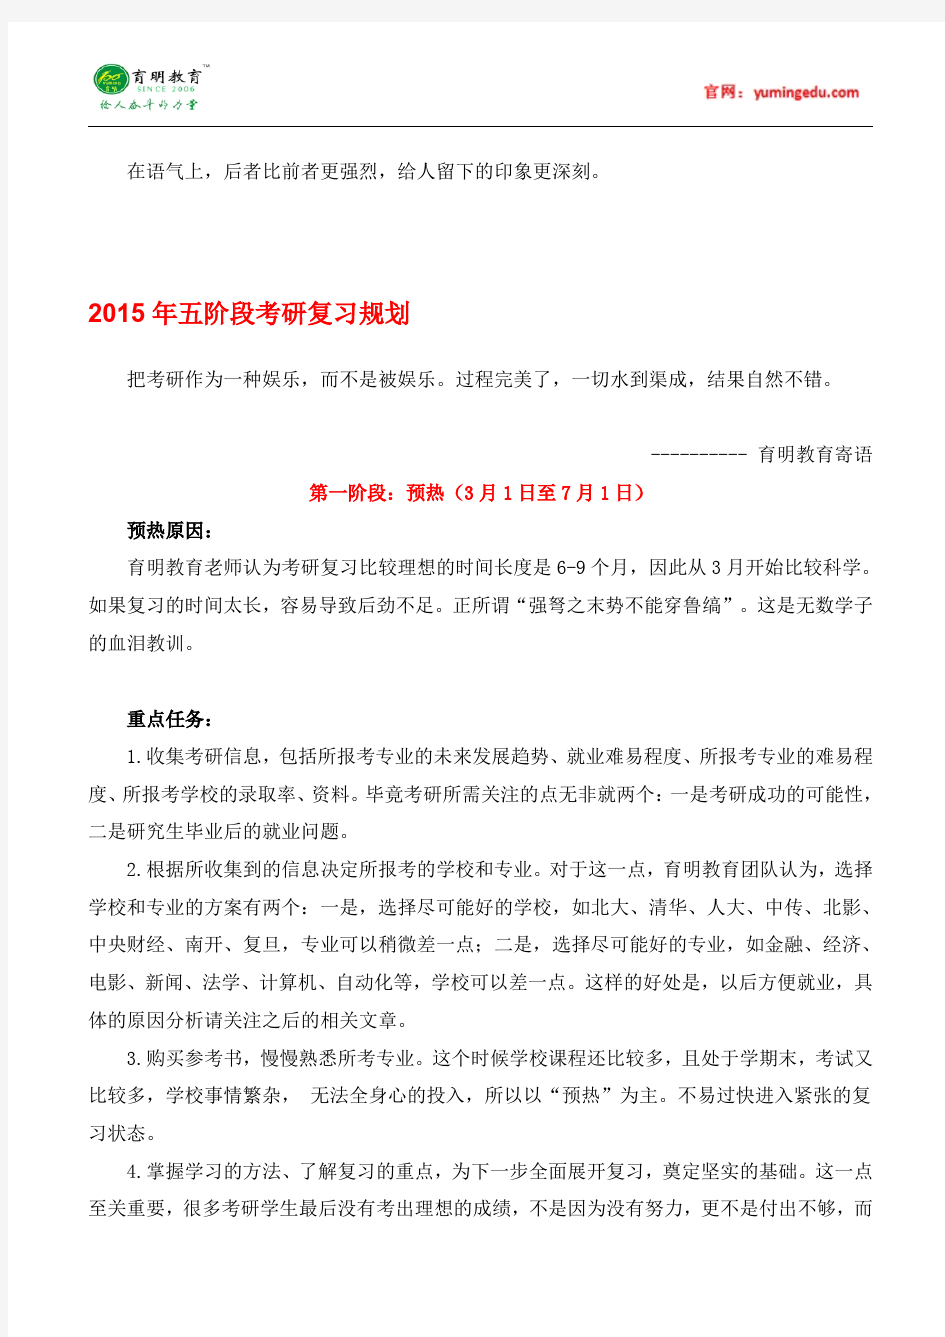 华南师范大学汉语国际教育硕士参考书-专业目录-分数线-考研笔记一百一十